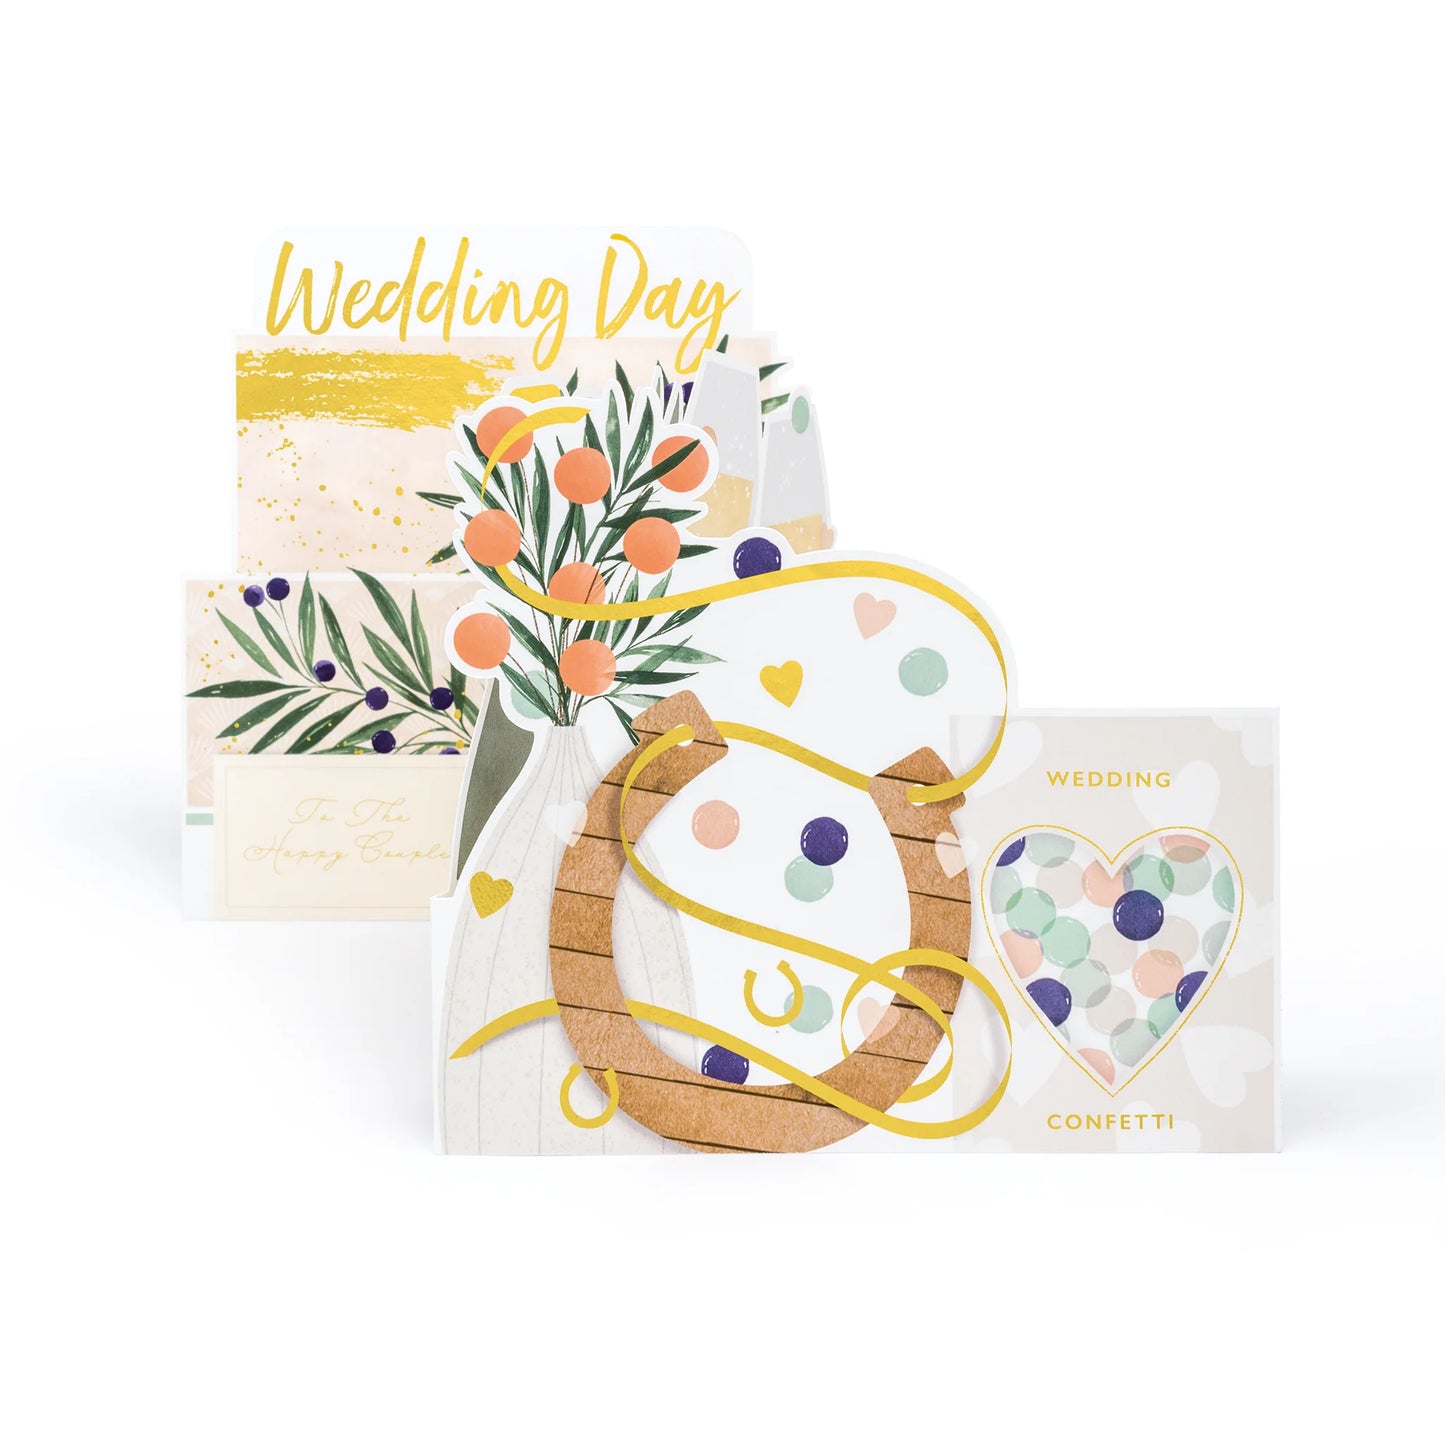 Wedding Day - 3D wedding card